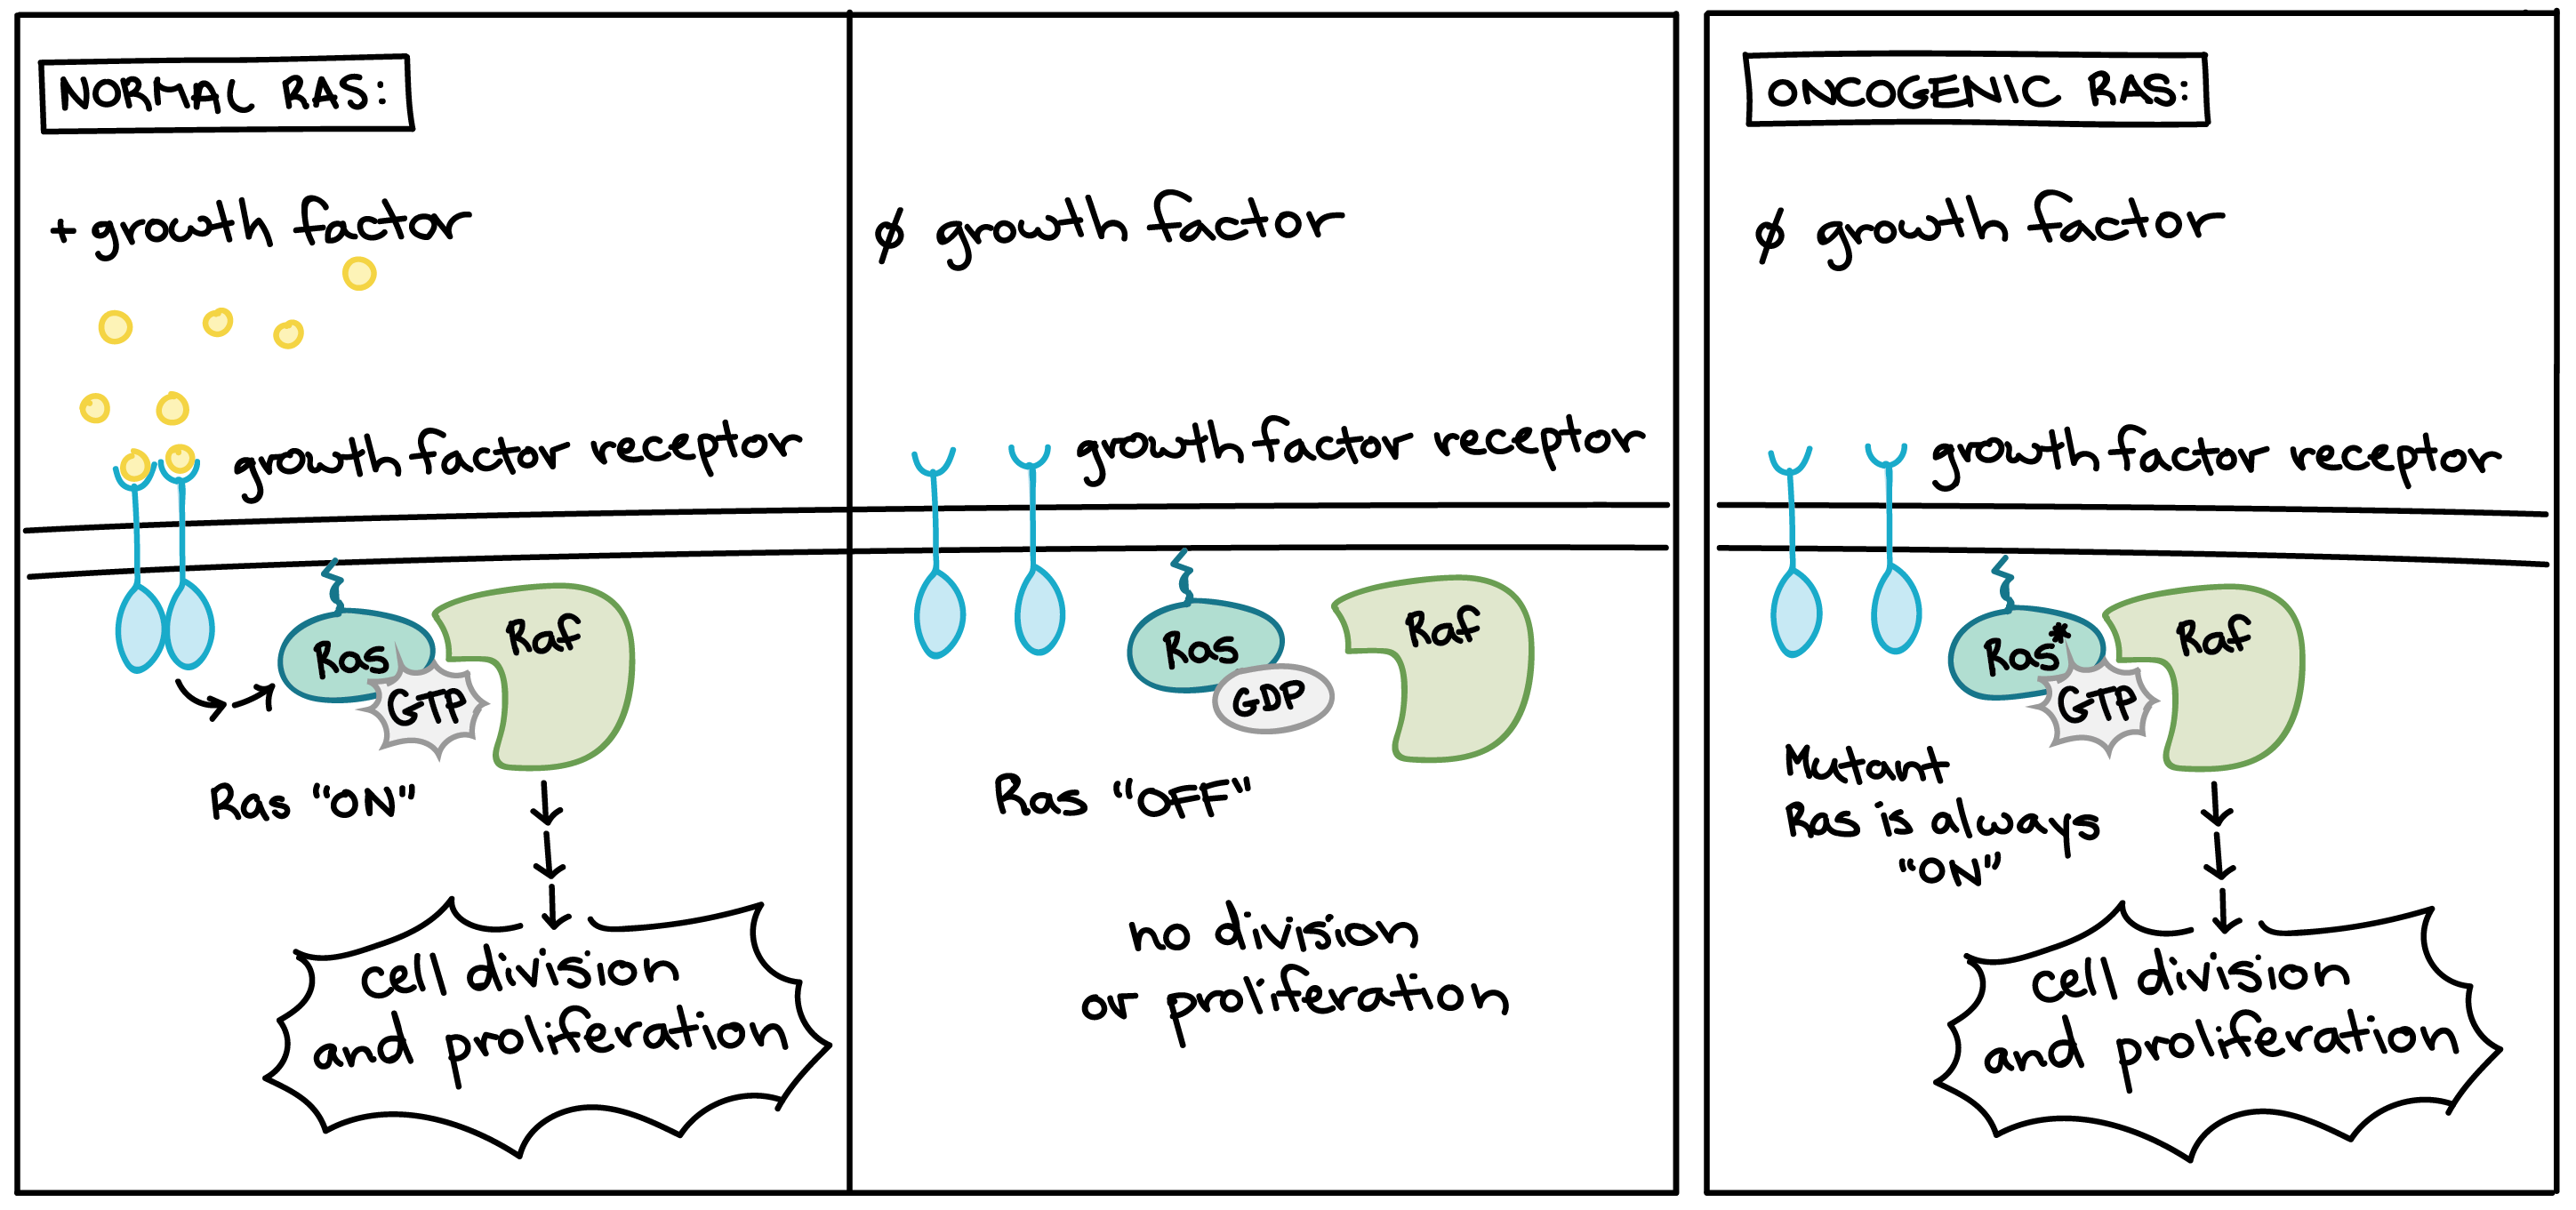 Forma oncogênica da proteína Ras.

A Ras normal é ativada quando os fatores de crescimento se ligam a receptores do fator de crescimento. Quando ativa, a Ras muda para sua forma ligada ao GTP e desencadeia uma via de sinalização que leva à divisão e proliferação celular. Então, a Ras normal troca GTP por GDP e volta ao seu estado inativo até que a célula perceba mais fatores de crescimento.

A forma oncogênica da Ras fica permanentemente presa em sua forma ativa, ligada a GTP. A proteína Ras oncogênica ativa a via de sinalização levando ao crescimento e proliferação mesmo quando não houver a presença de fatores de crescimento.